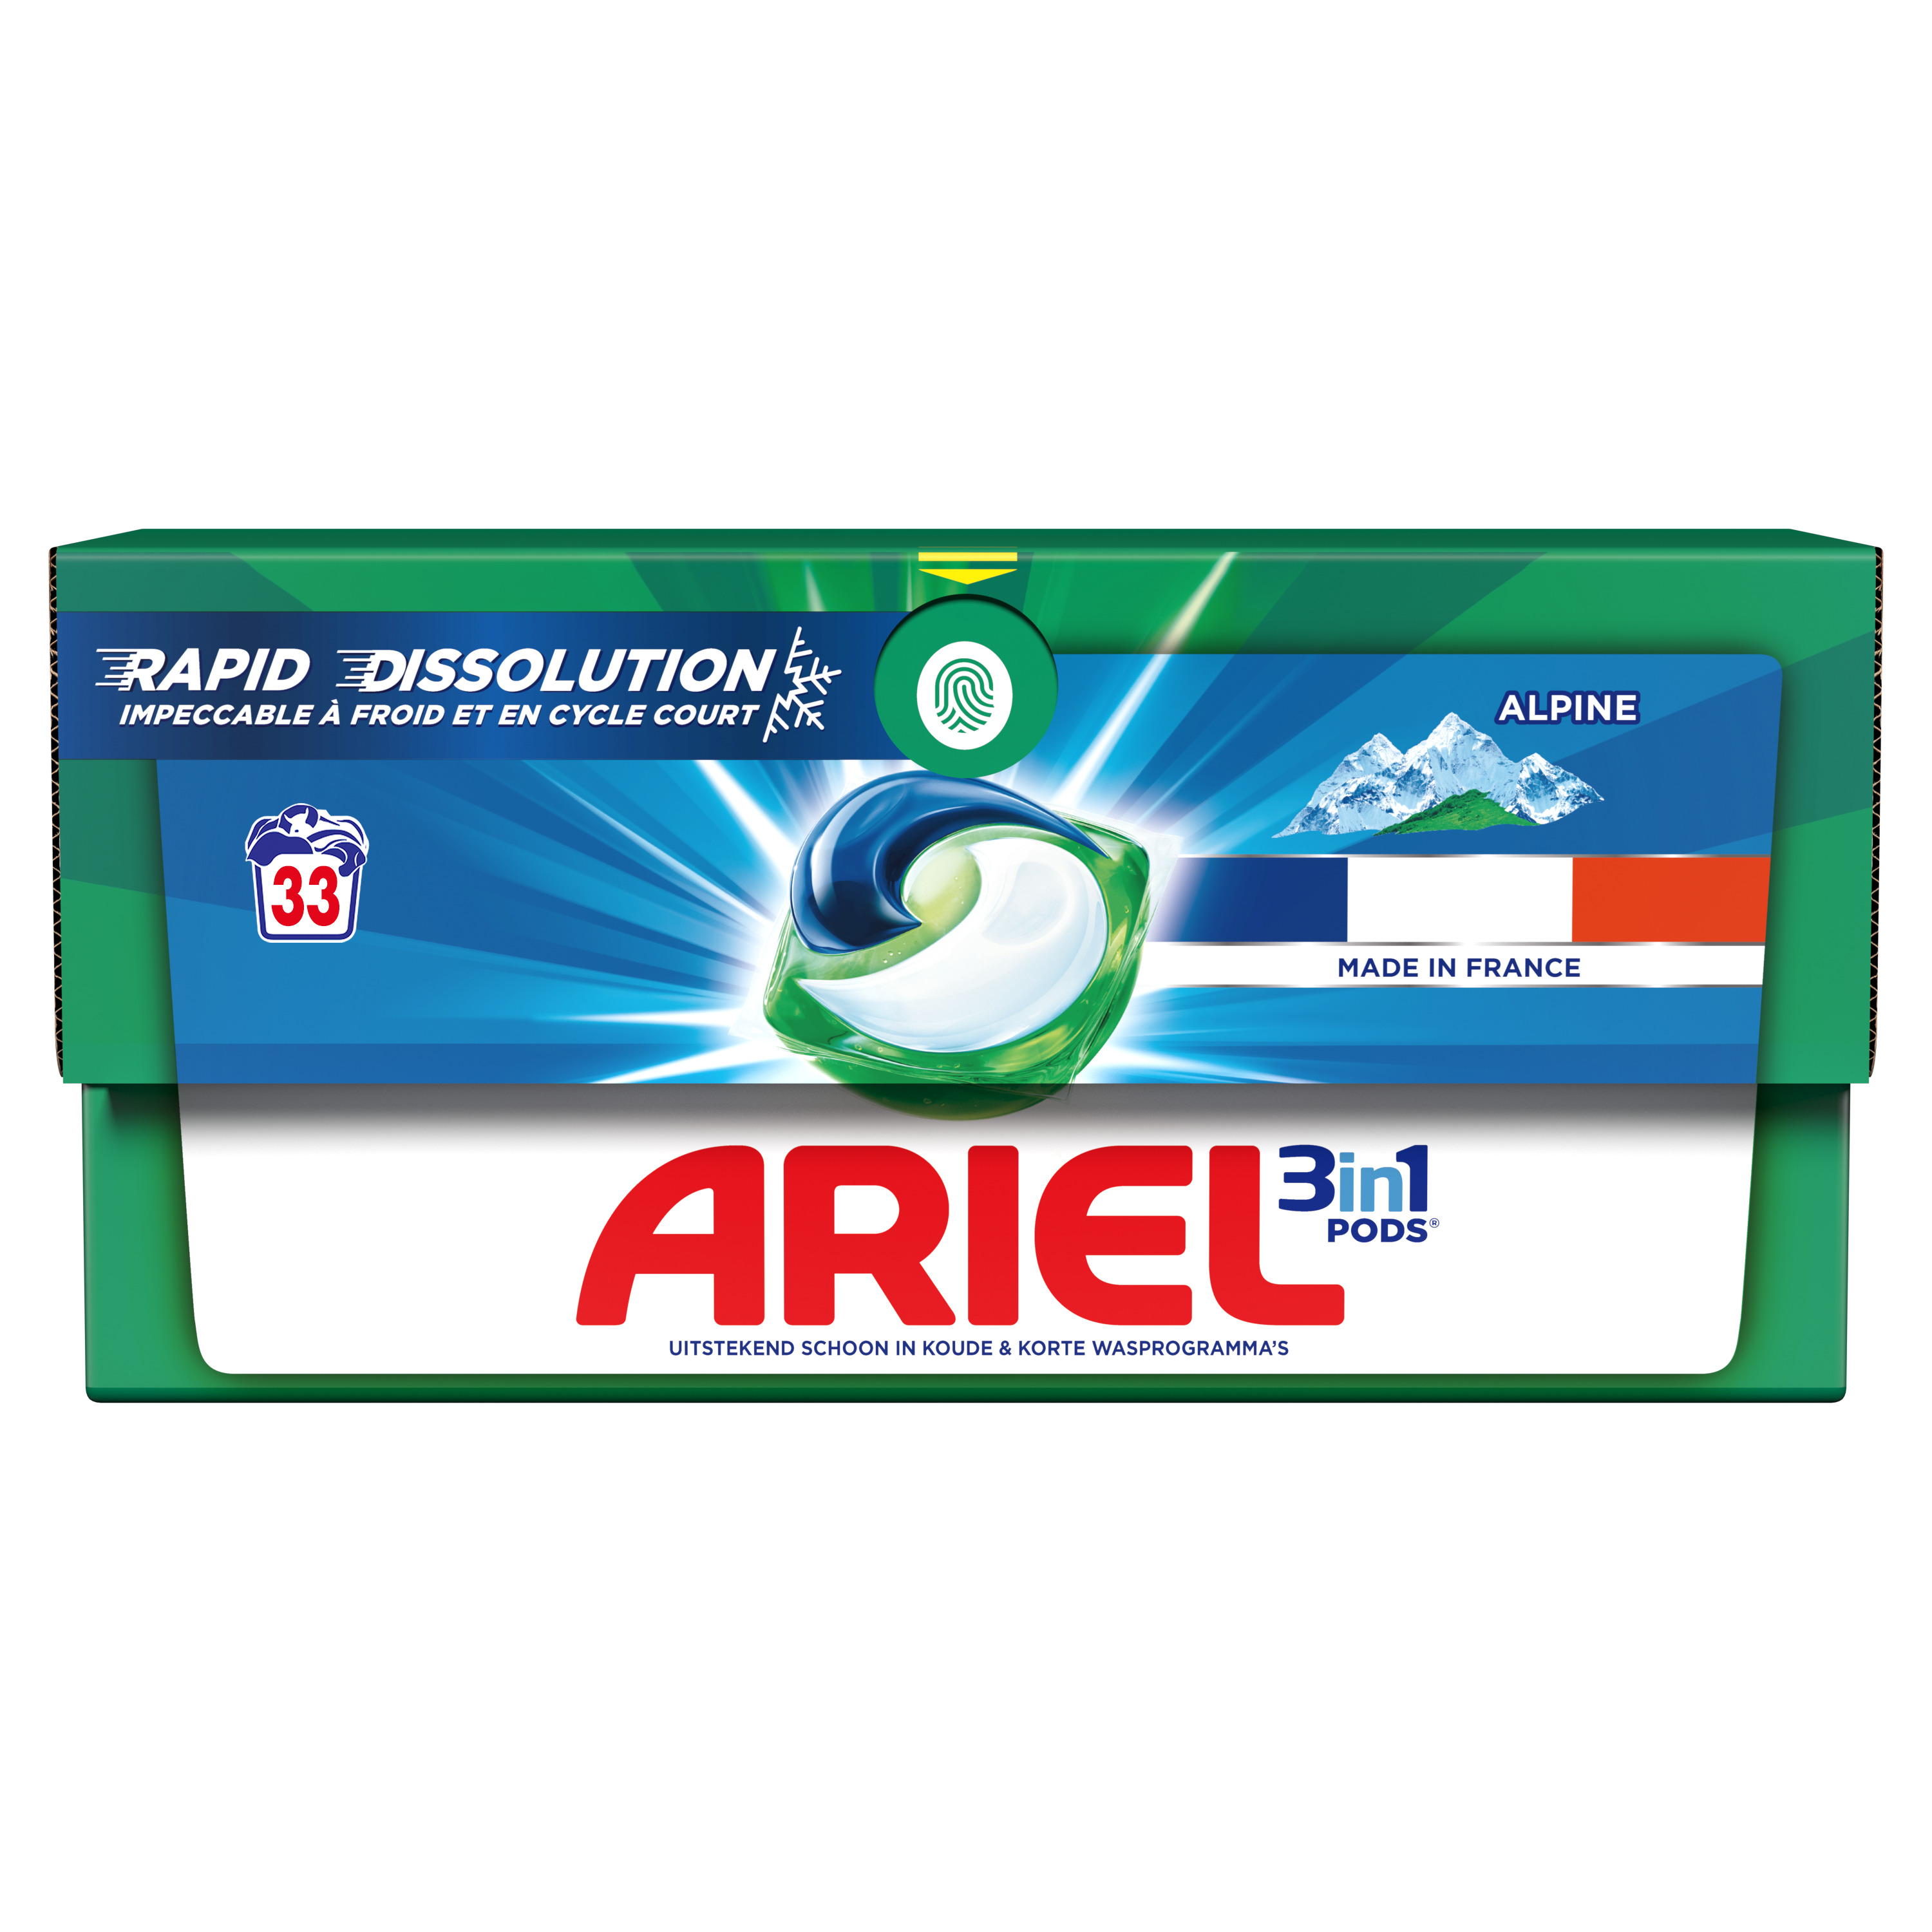 Toutes les promotions de Ariel lessive capsules - Trouvez et découvrez la  promotion de Ariel lessive capsules la moins chère!